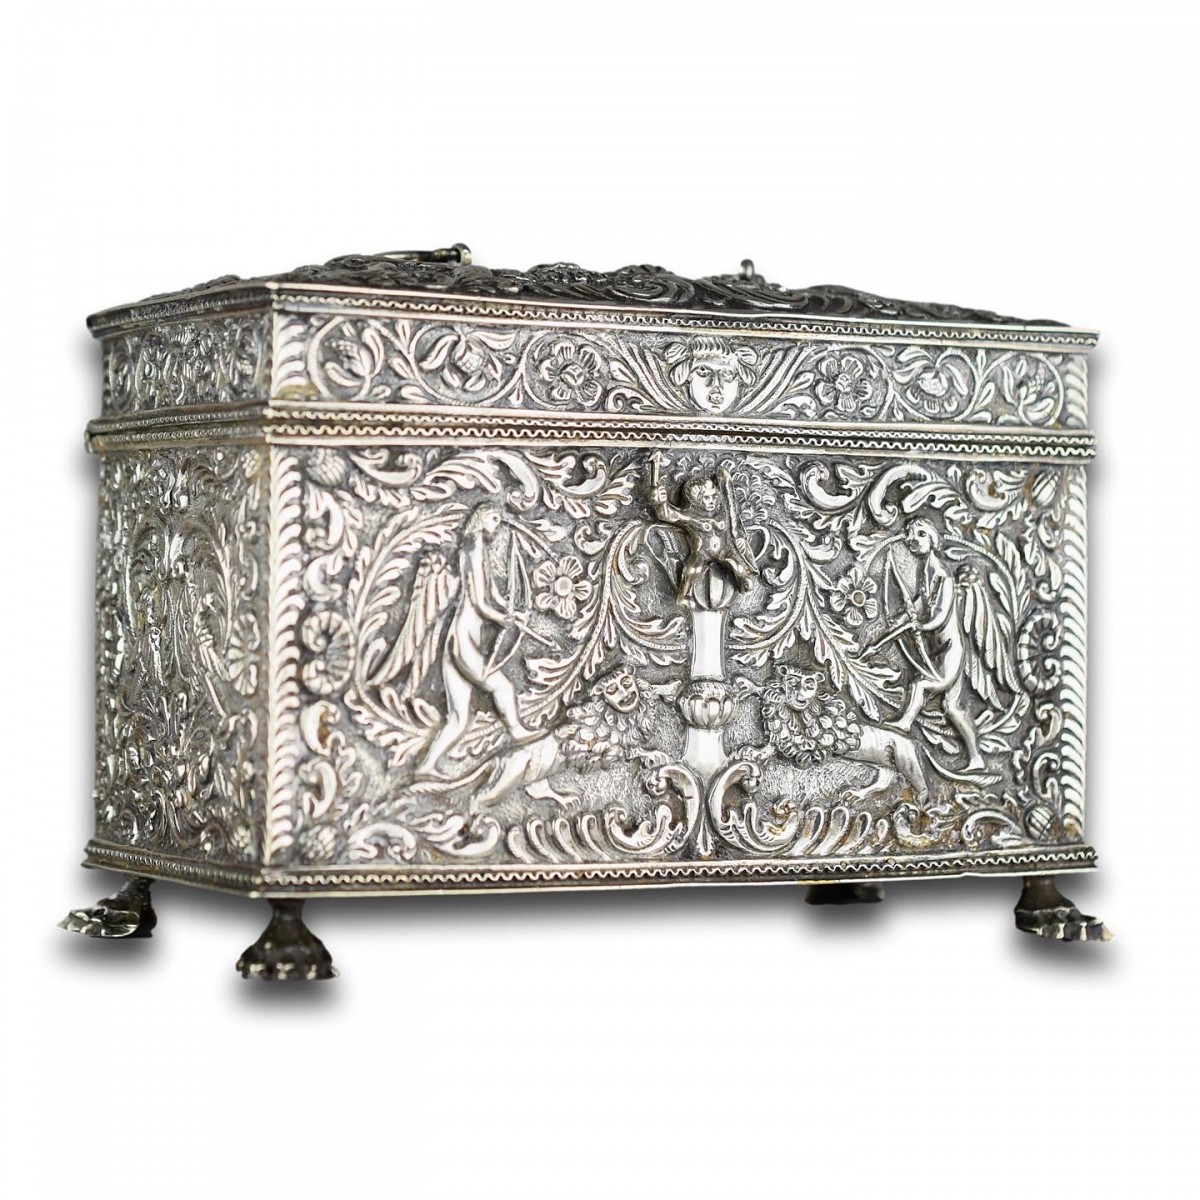 Repoussé silver century casket, Dutch19th marriage